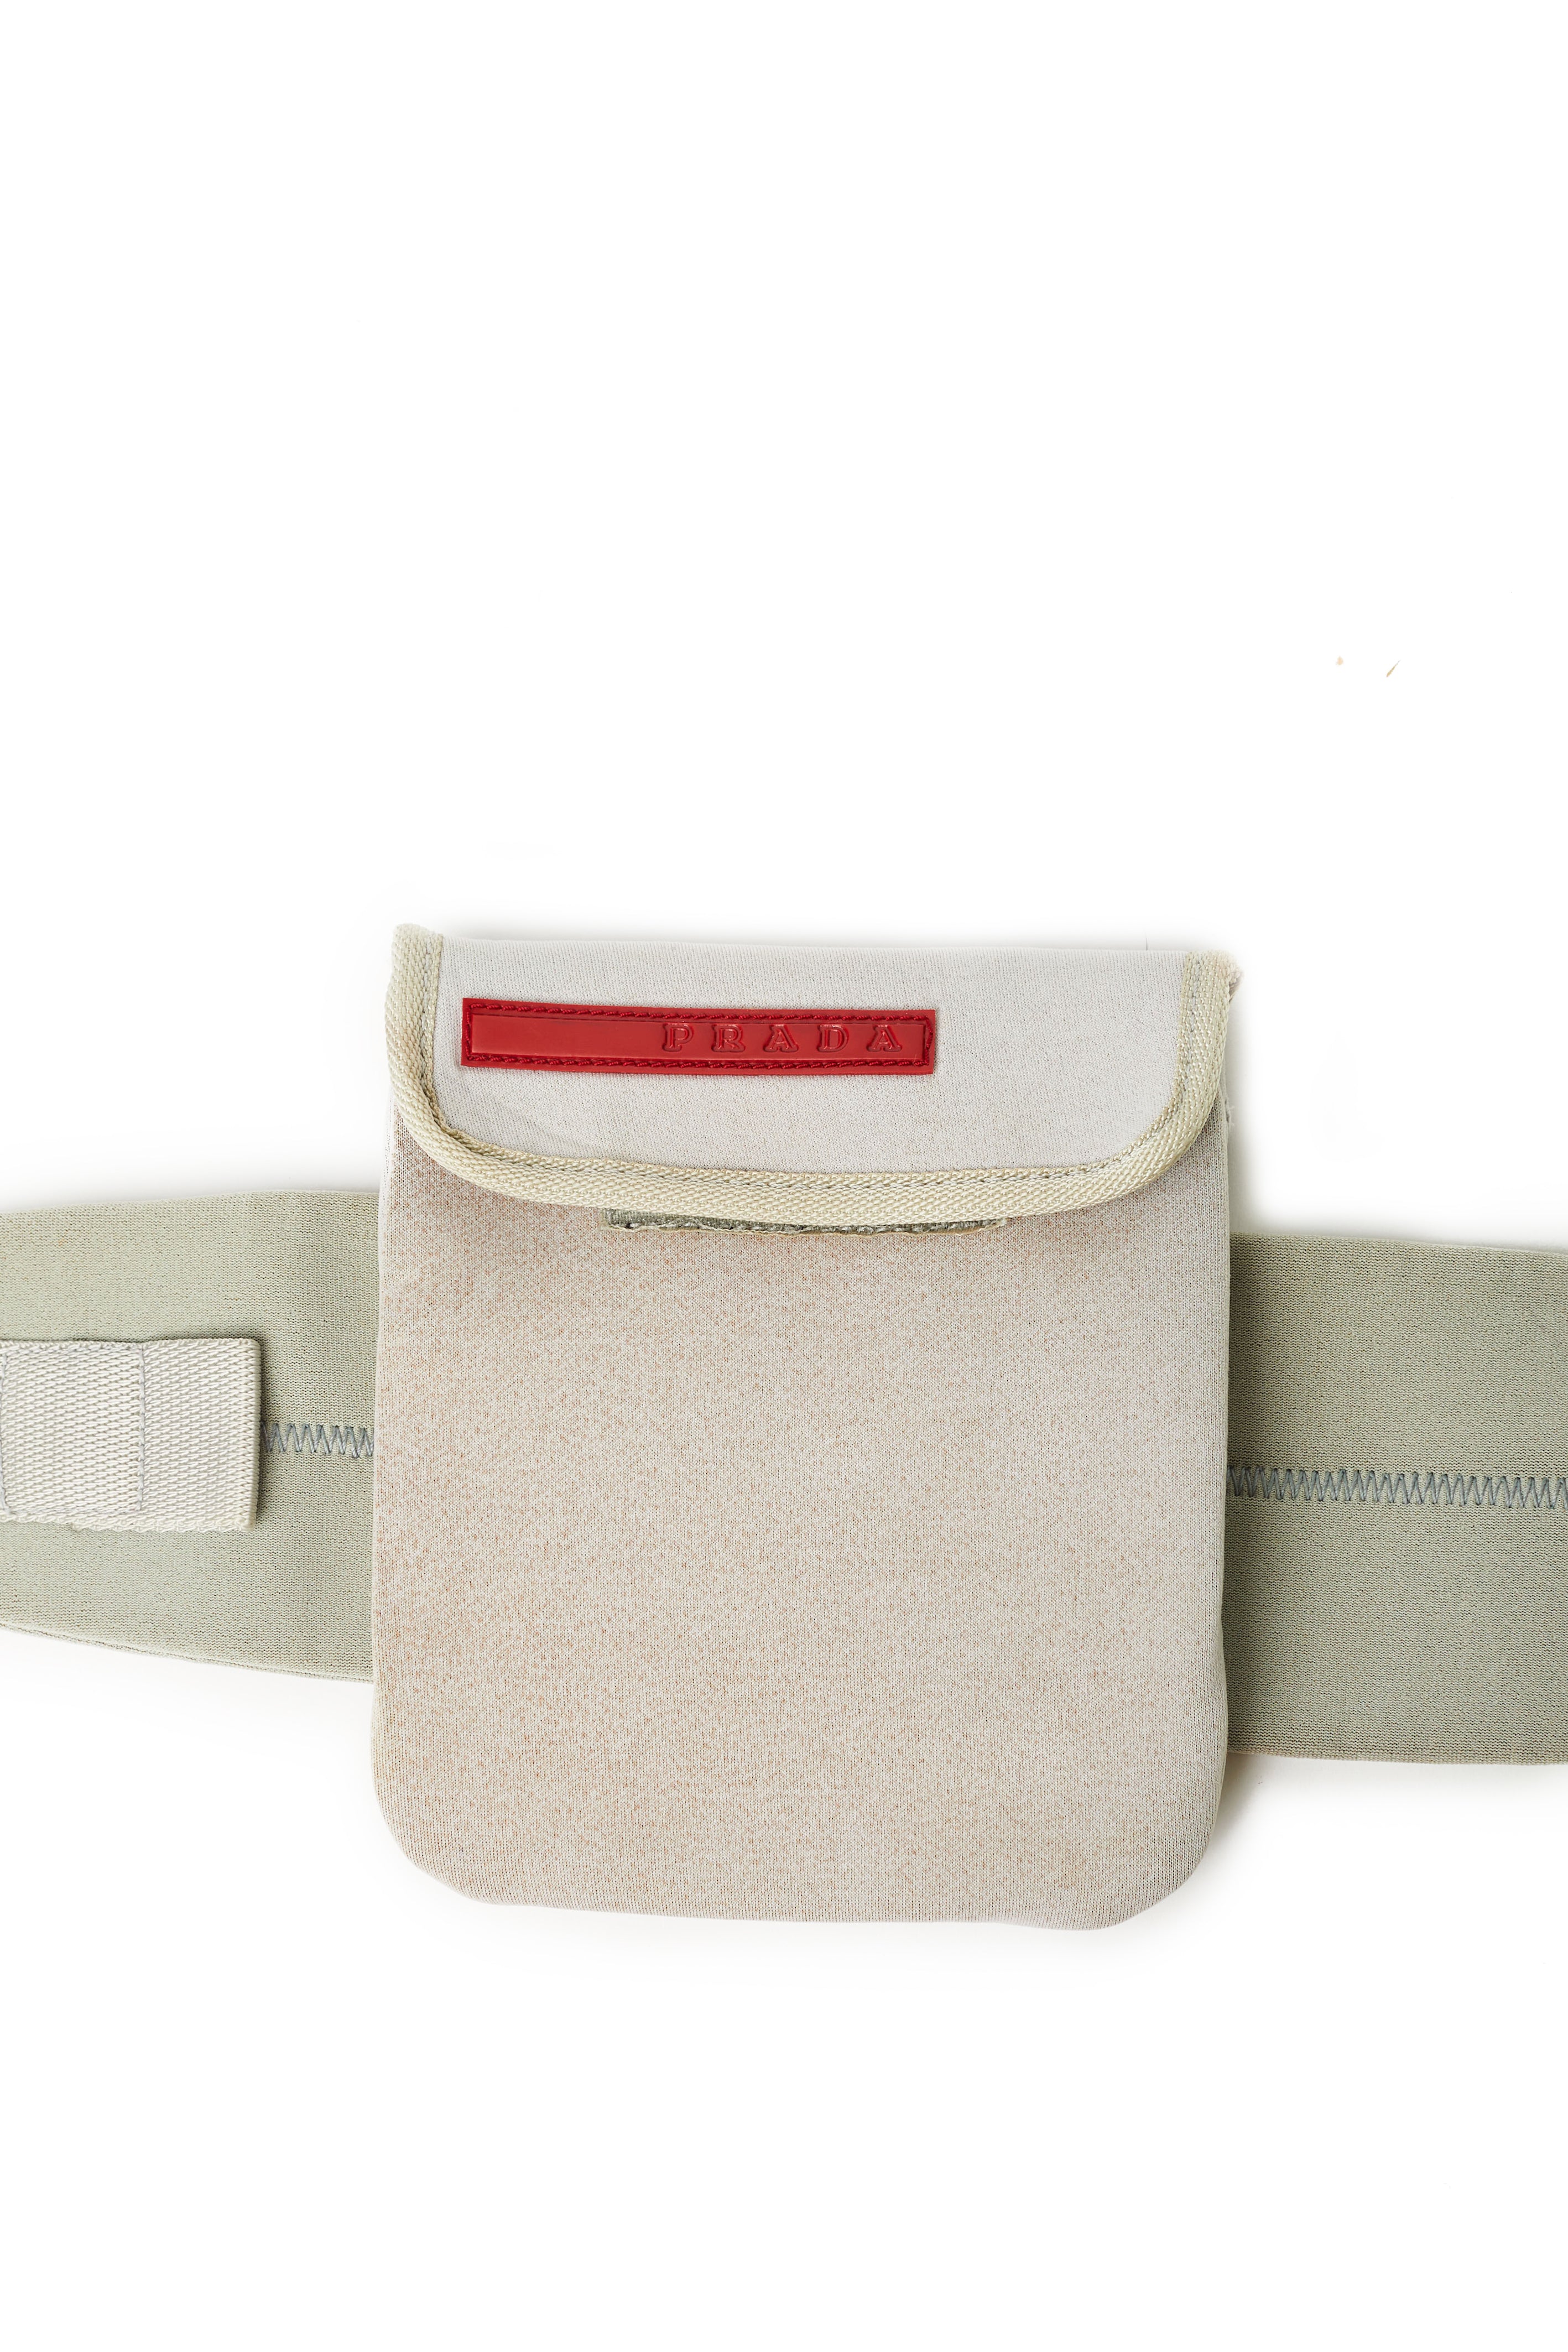 Prada Logo Patch Belt Bag In F0011 Rosso, ModeSens